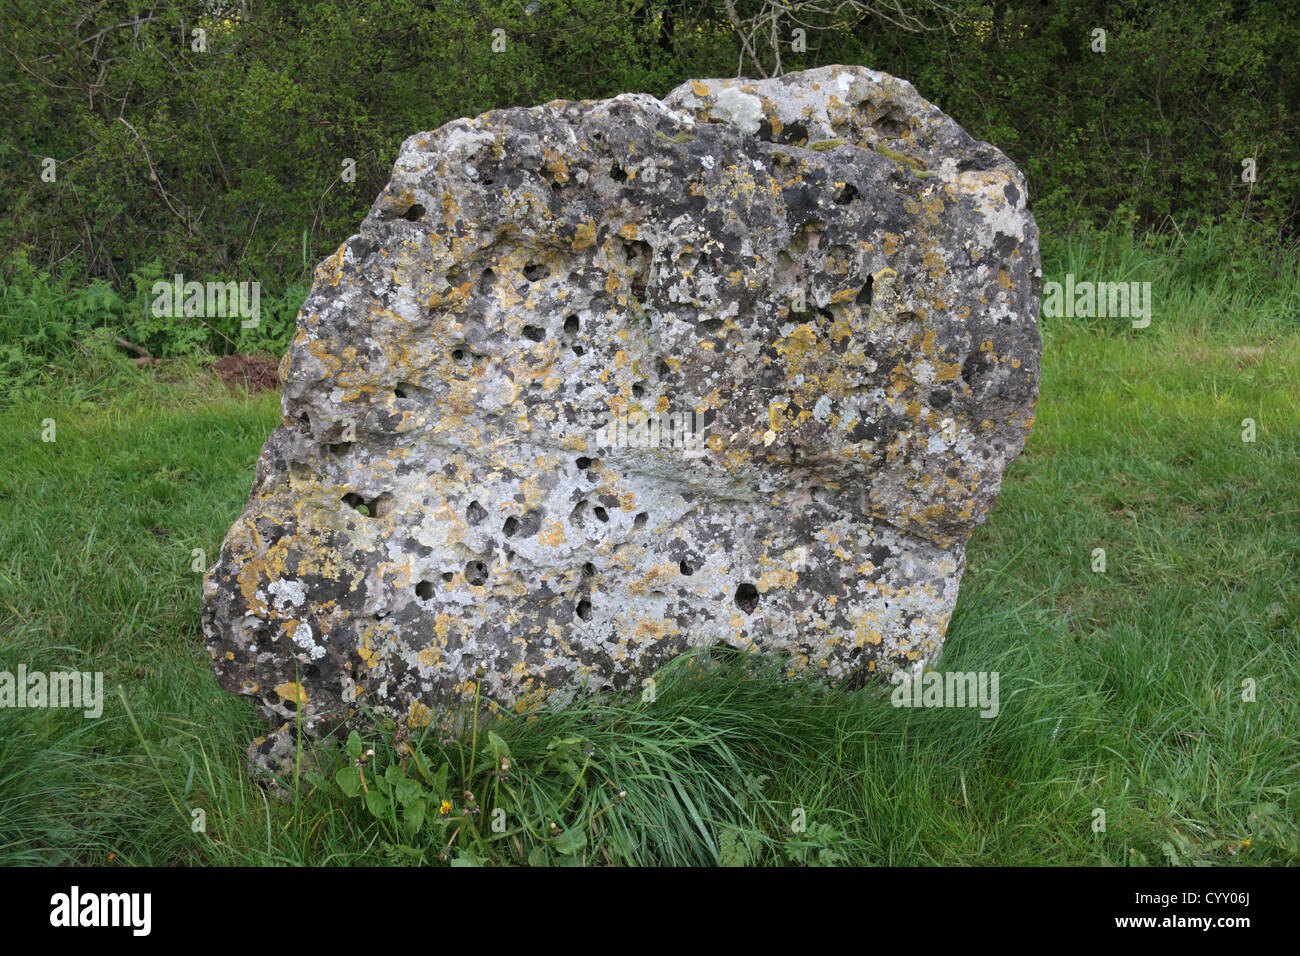 Ein Stein in den Männern des Königs Stein Kreis, Teil der Rollright Steine, in der Nähe von Chipping Norton, Oxfordshire, Vereinigtes Königreich. Stockfoto